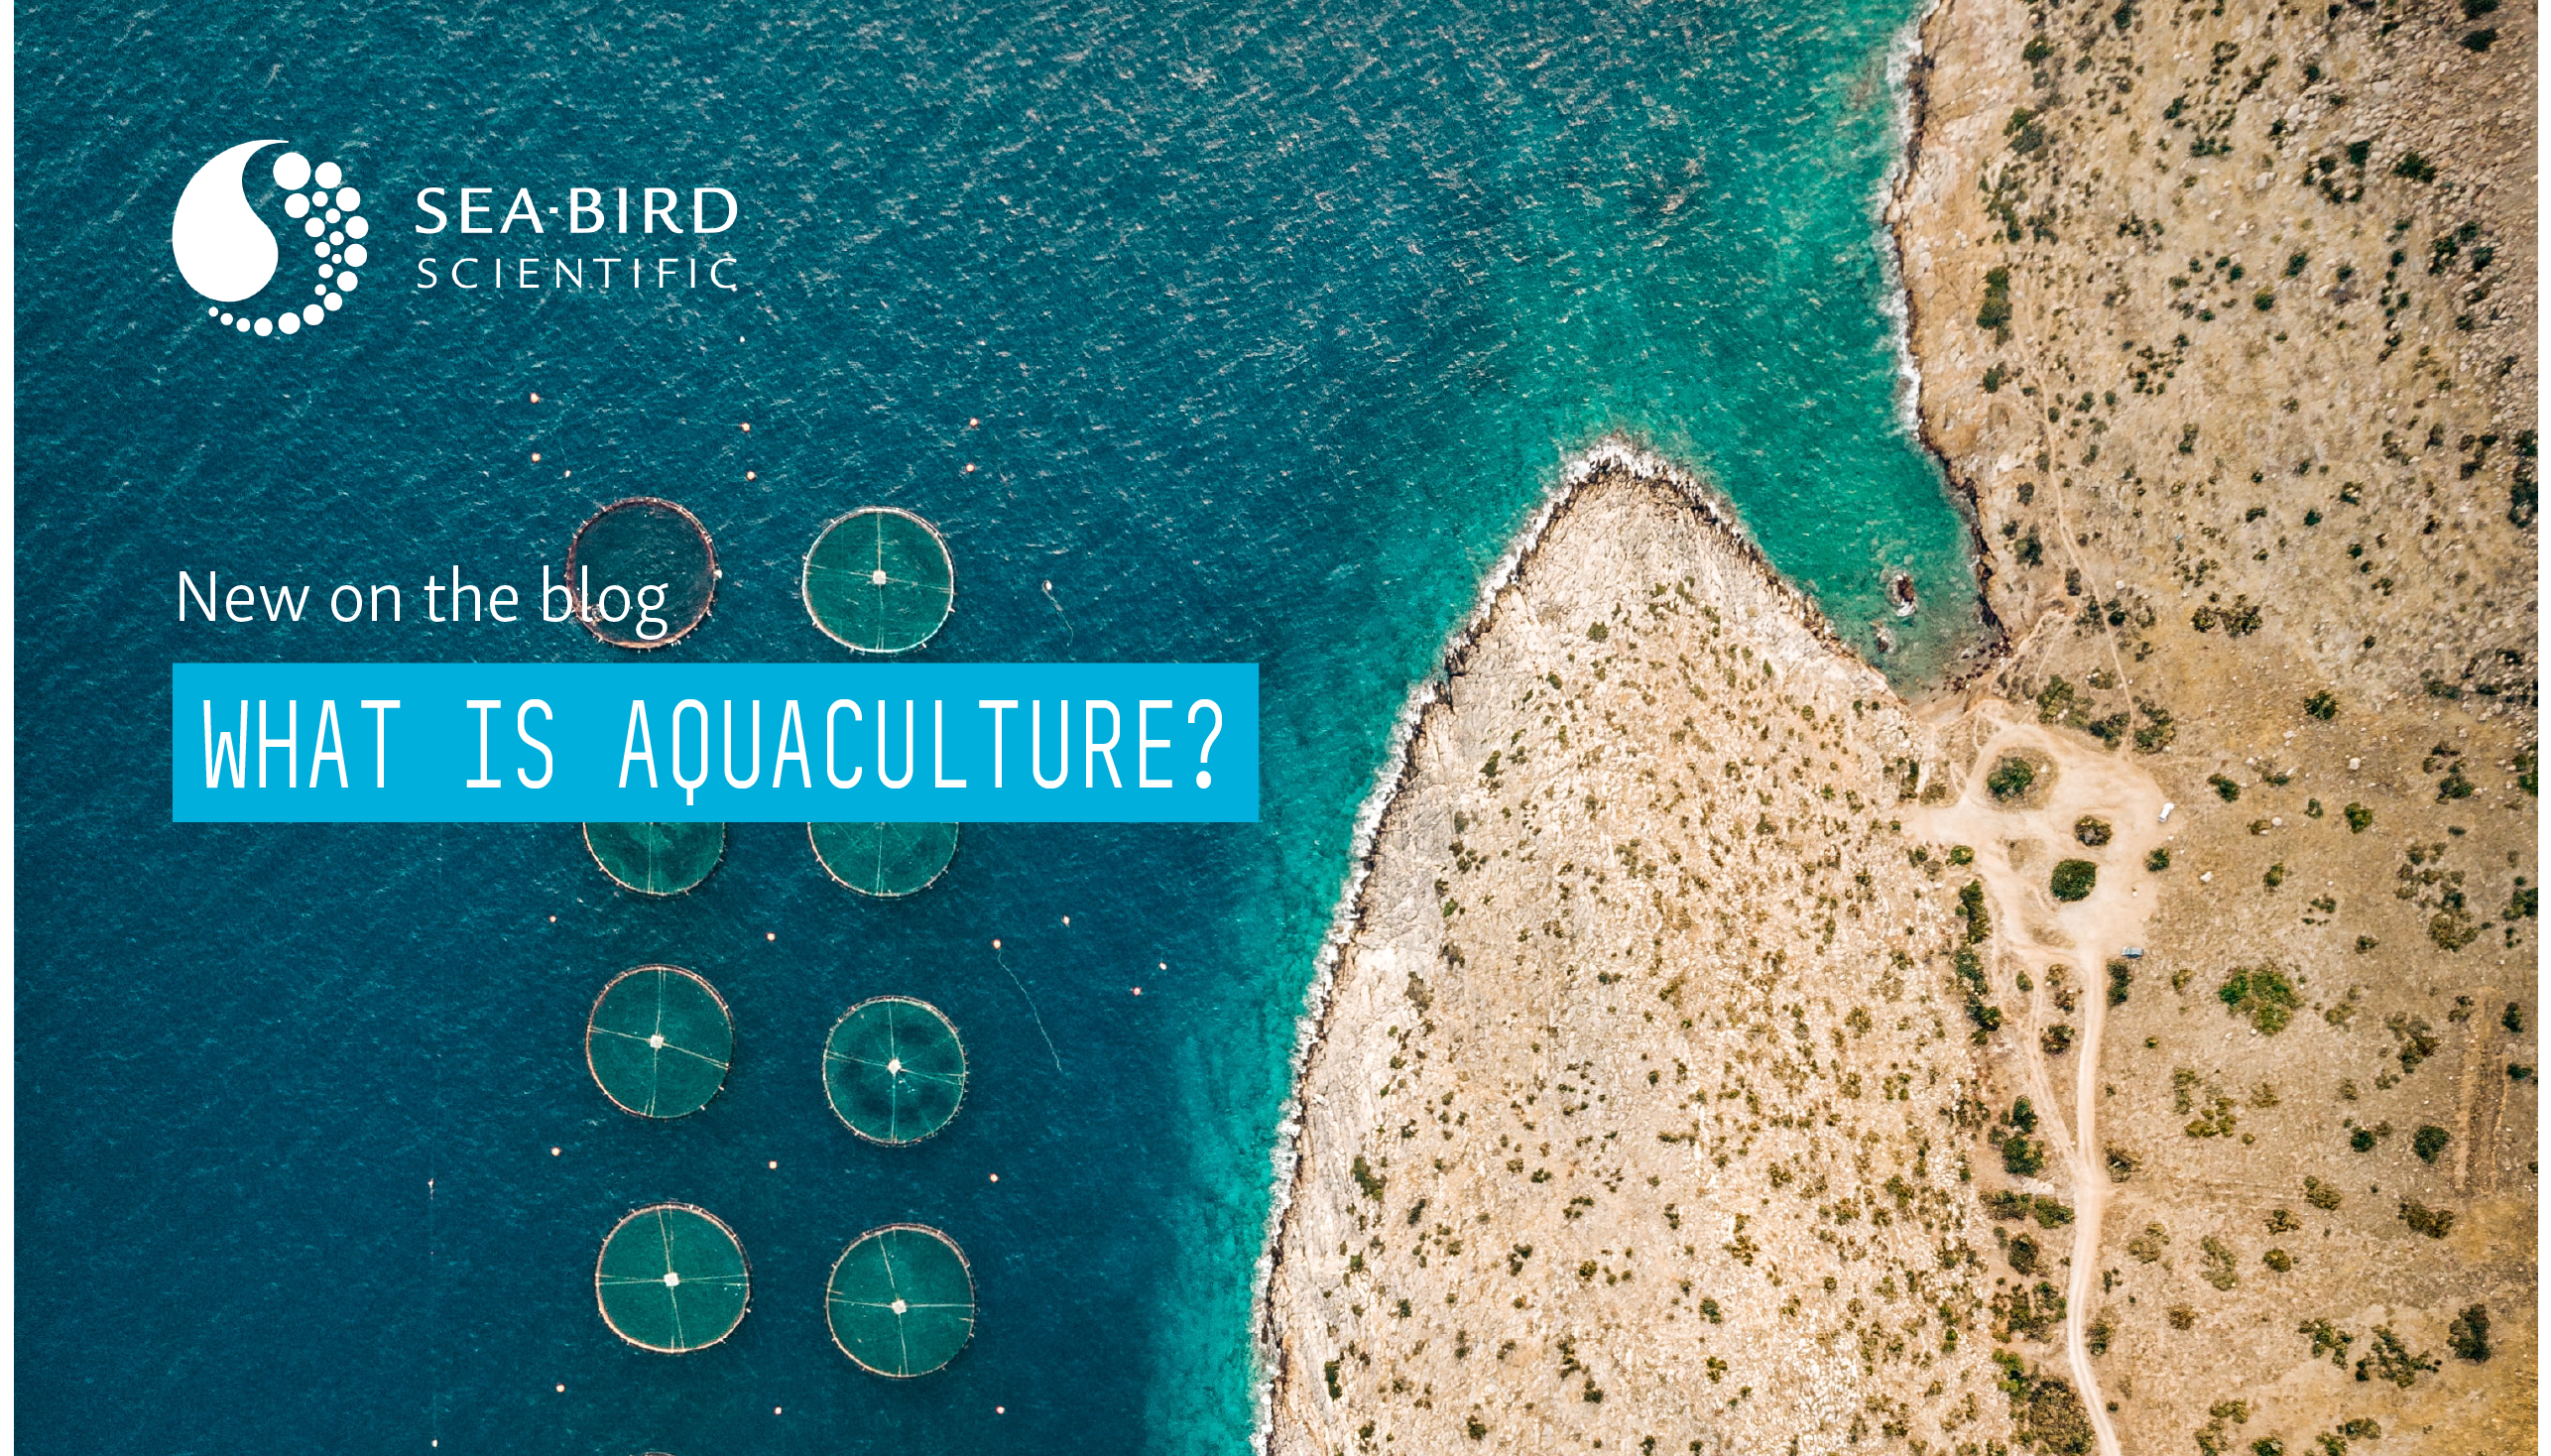 What is Aquaculture? - Sea-Bird Scientific Blog